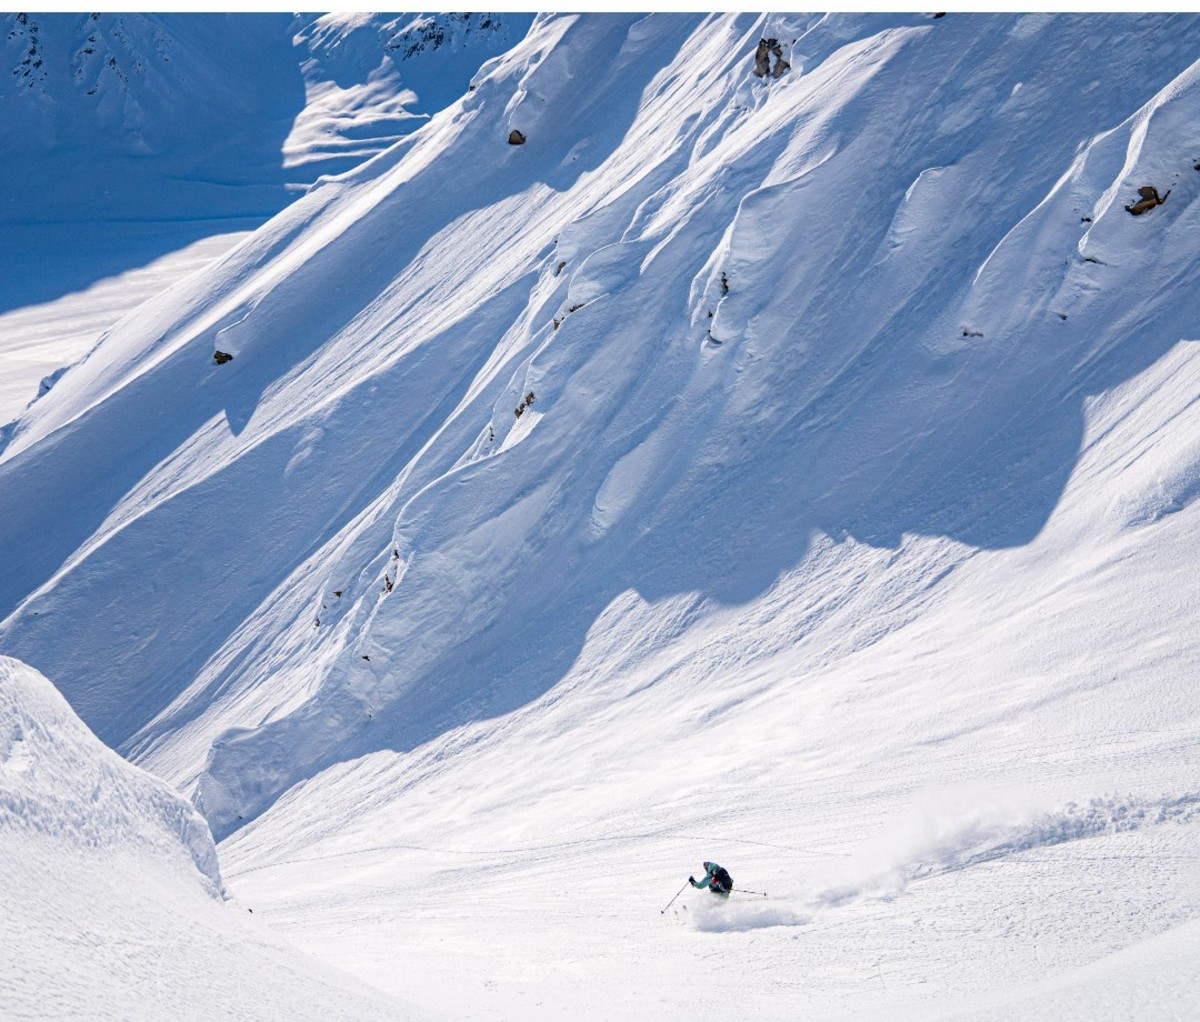 Heli-skier skiing through a powdery gully